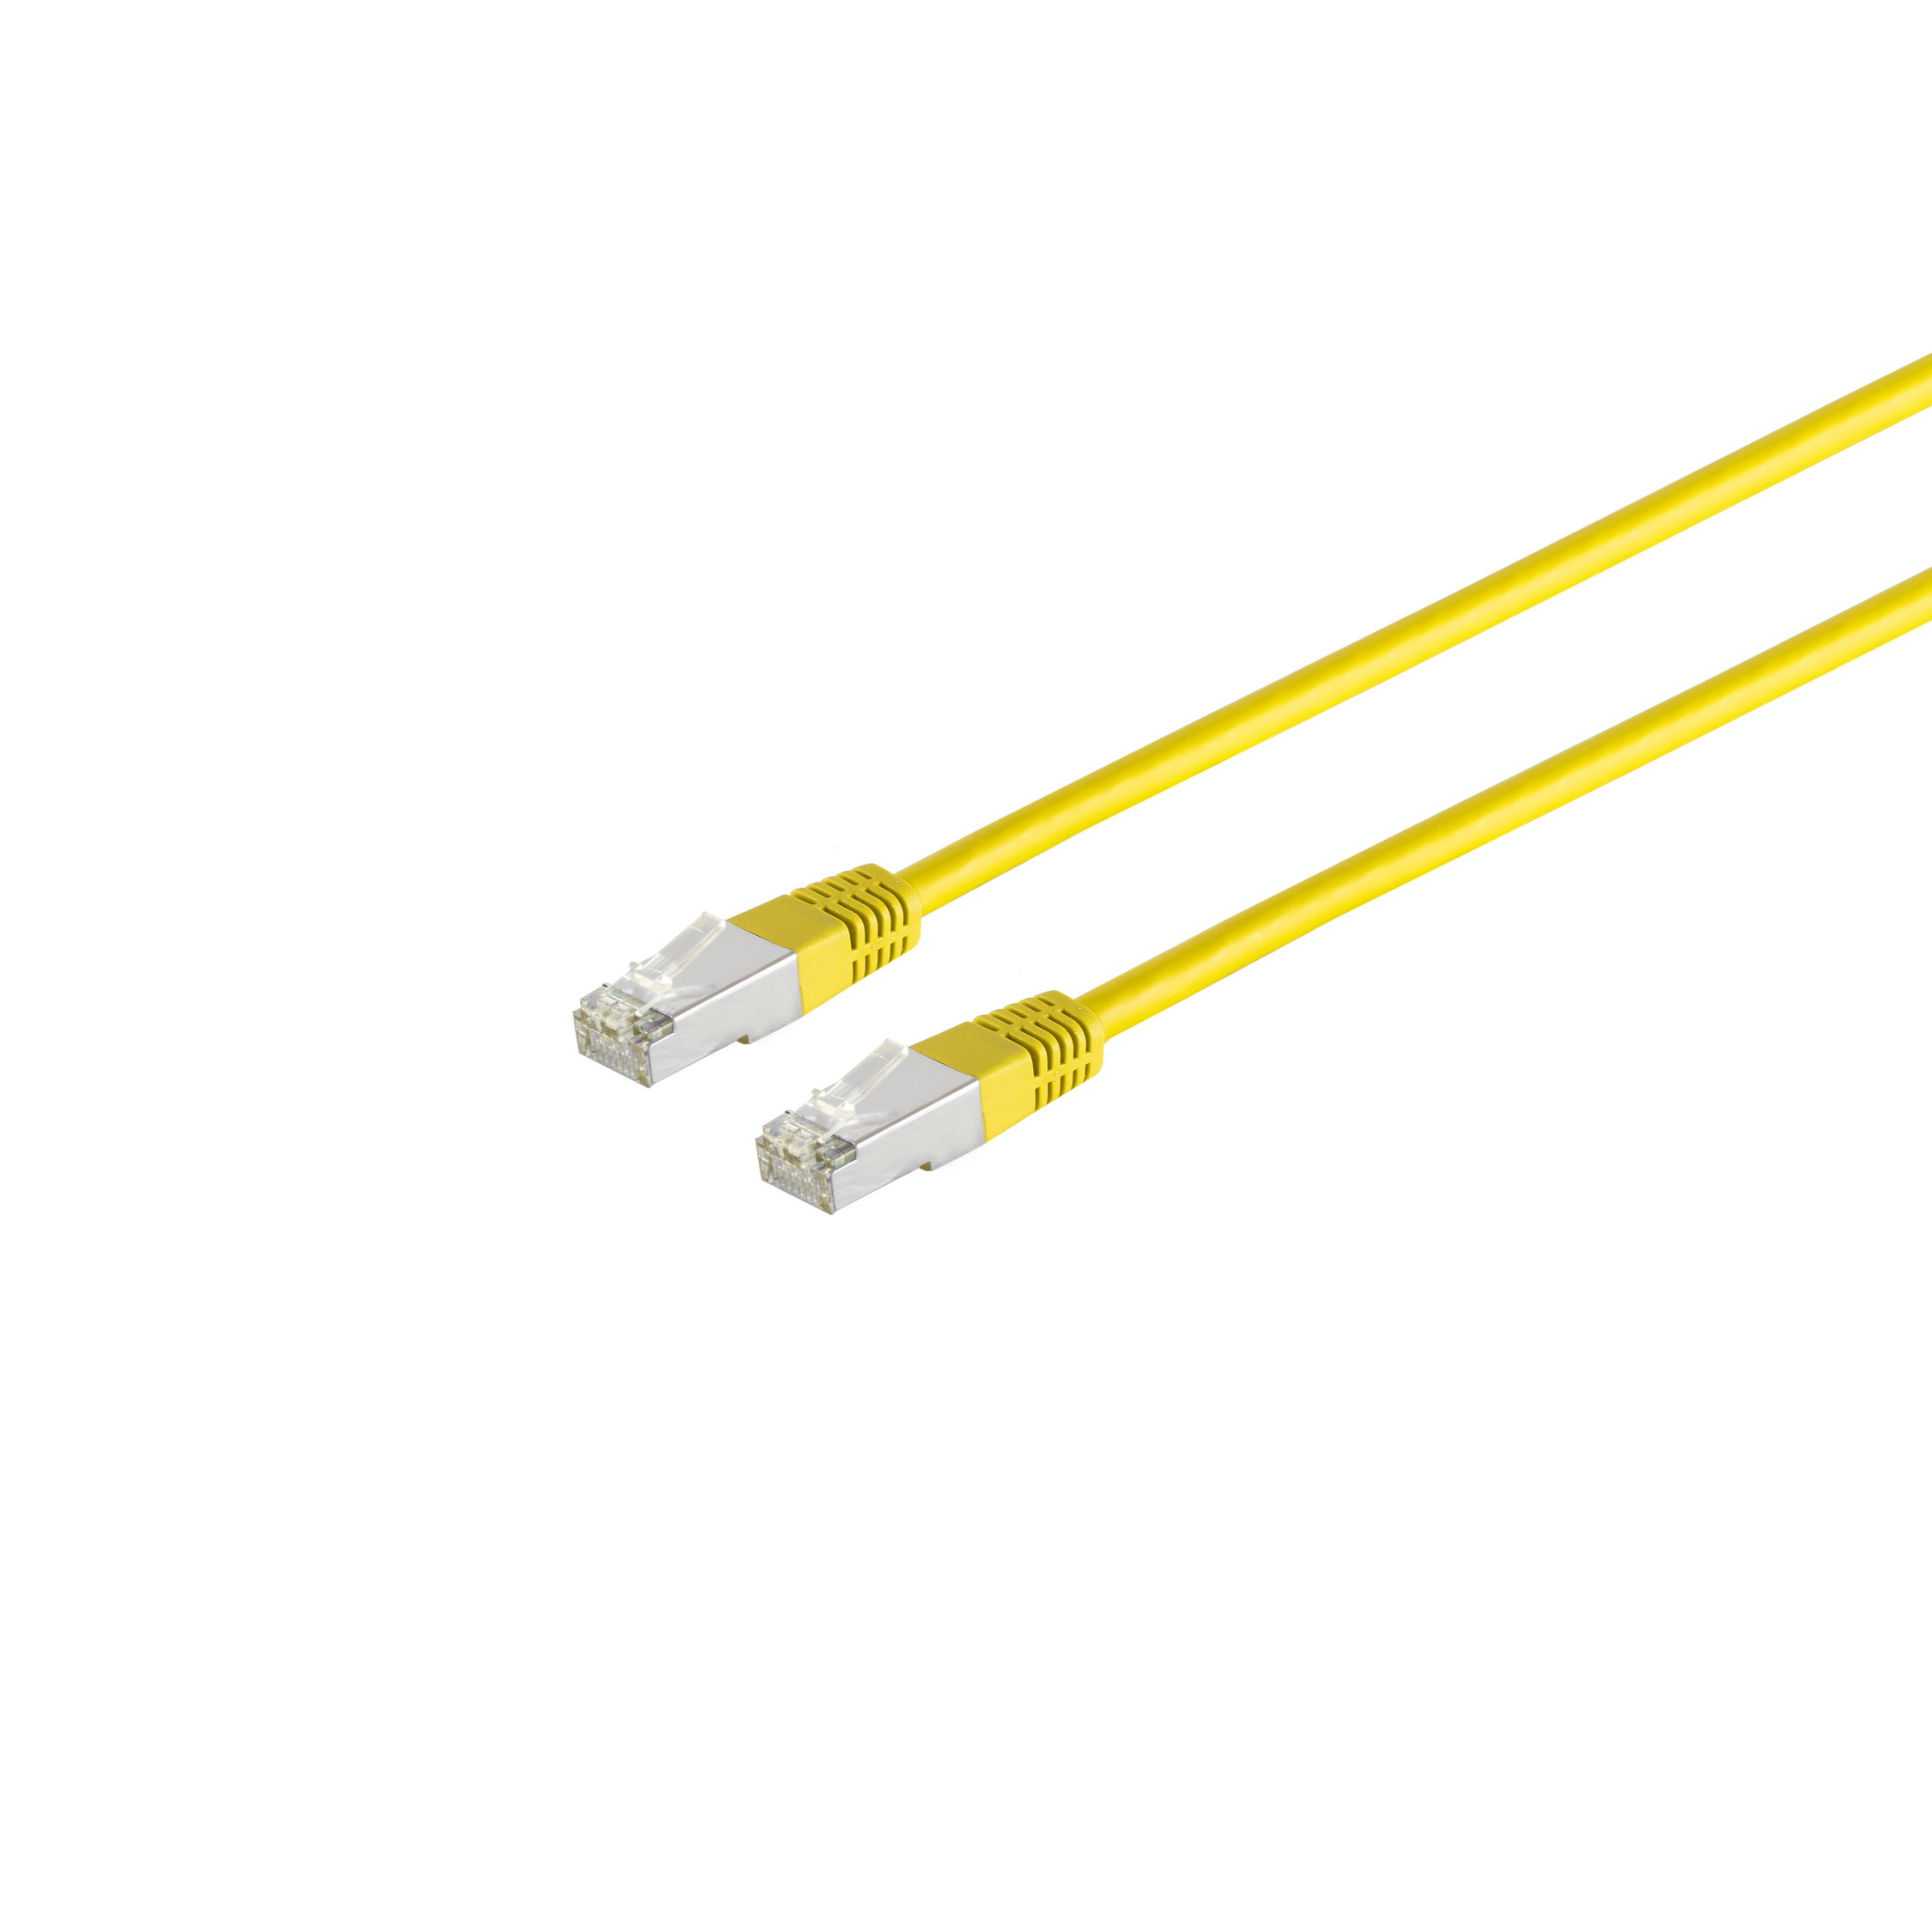 S/CONN MAXIMUM CONNECTIVITY Patchkabel gelb m RJ45, cat. 5m, 5e F/UTP Patchkabel 5